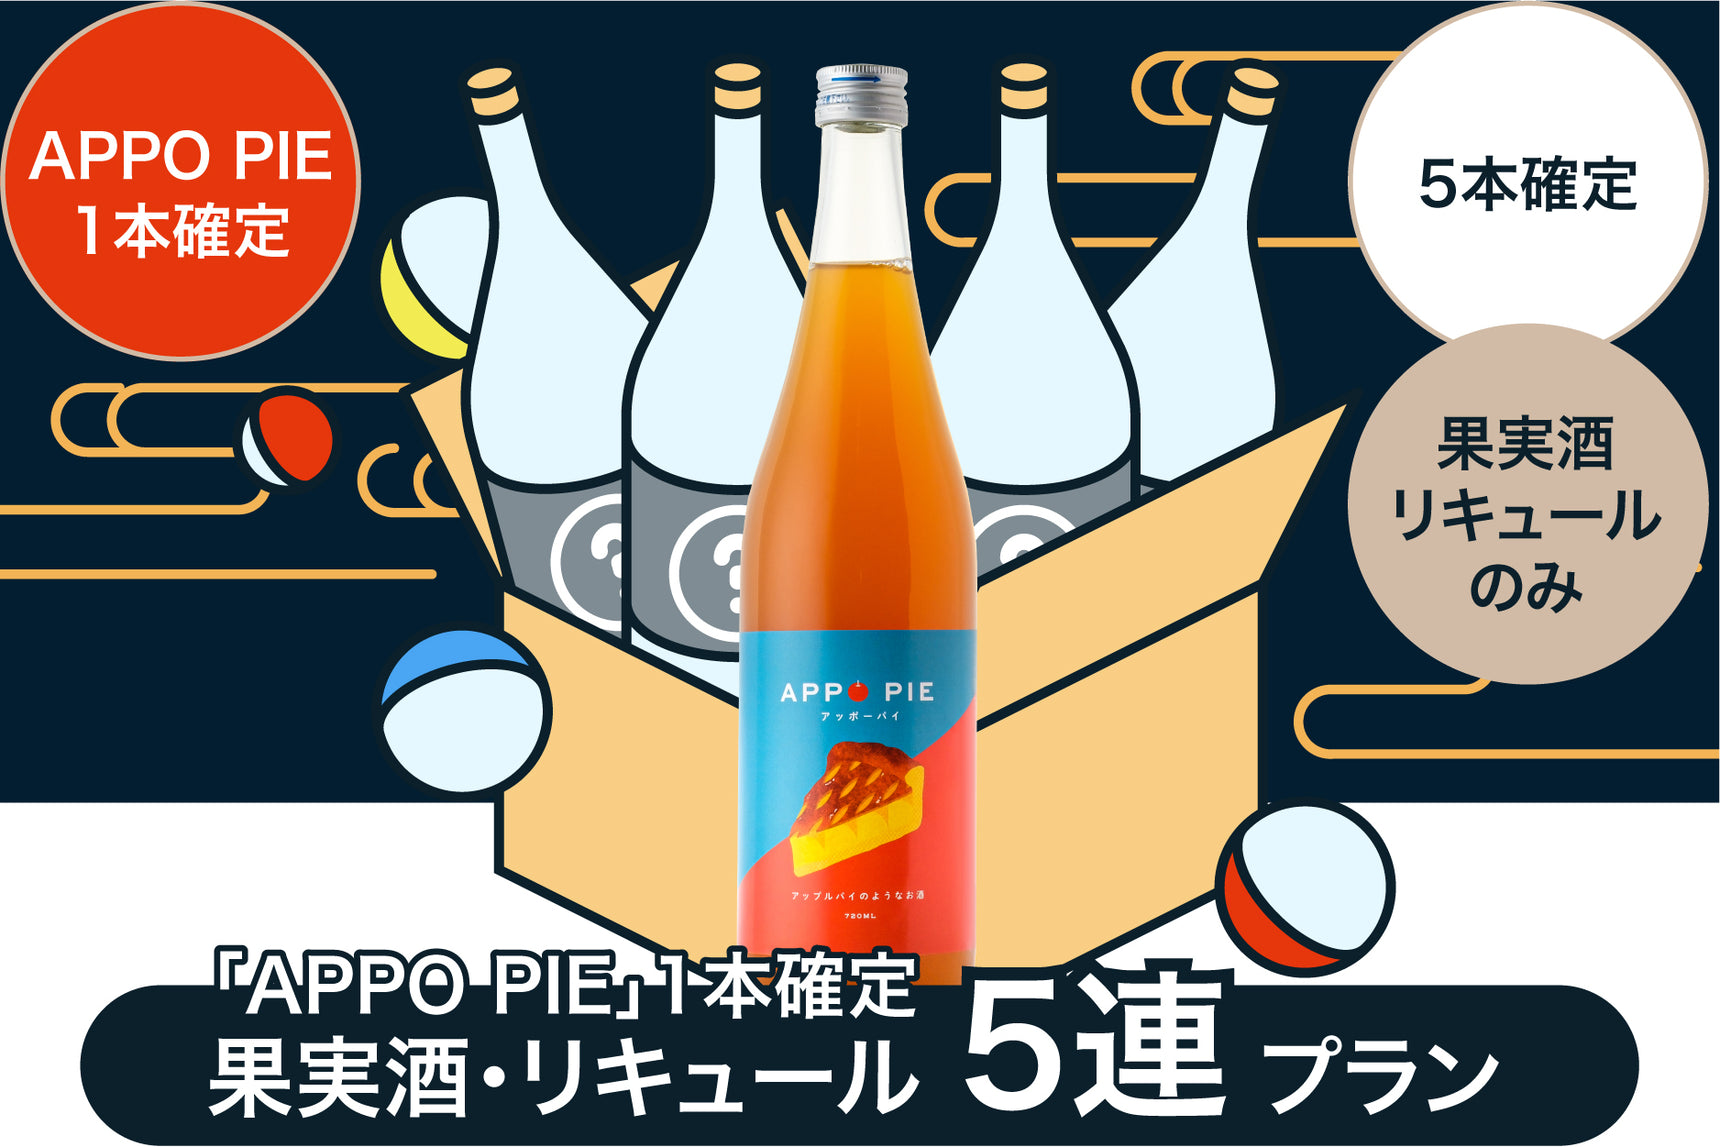 【1円酒ガチャ収穫祭参加者限定】「APPO PIE」1本確定 果実酒・リキュール 5連プラン